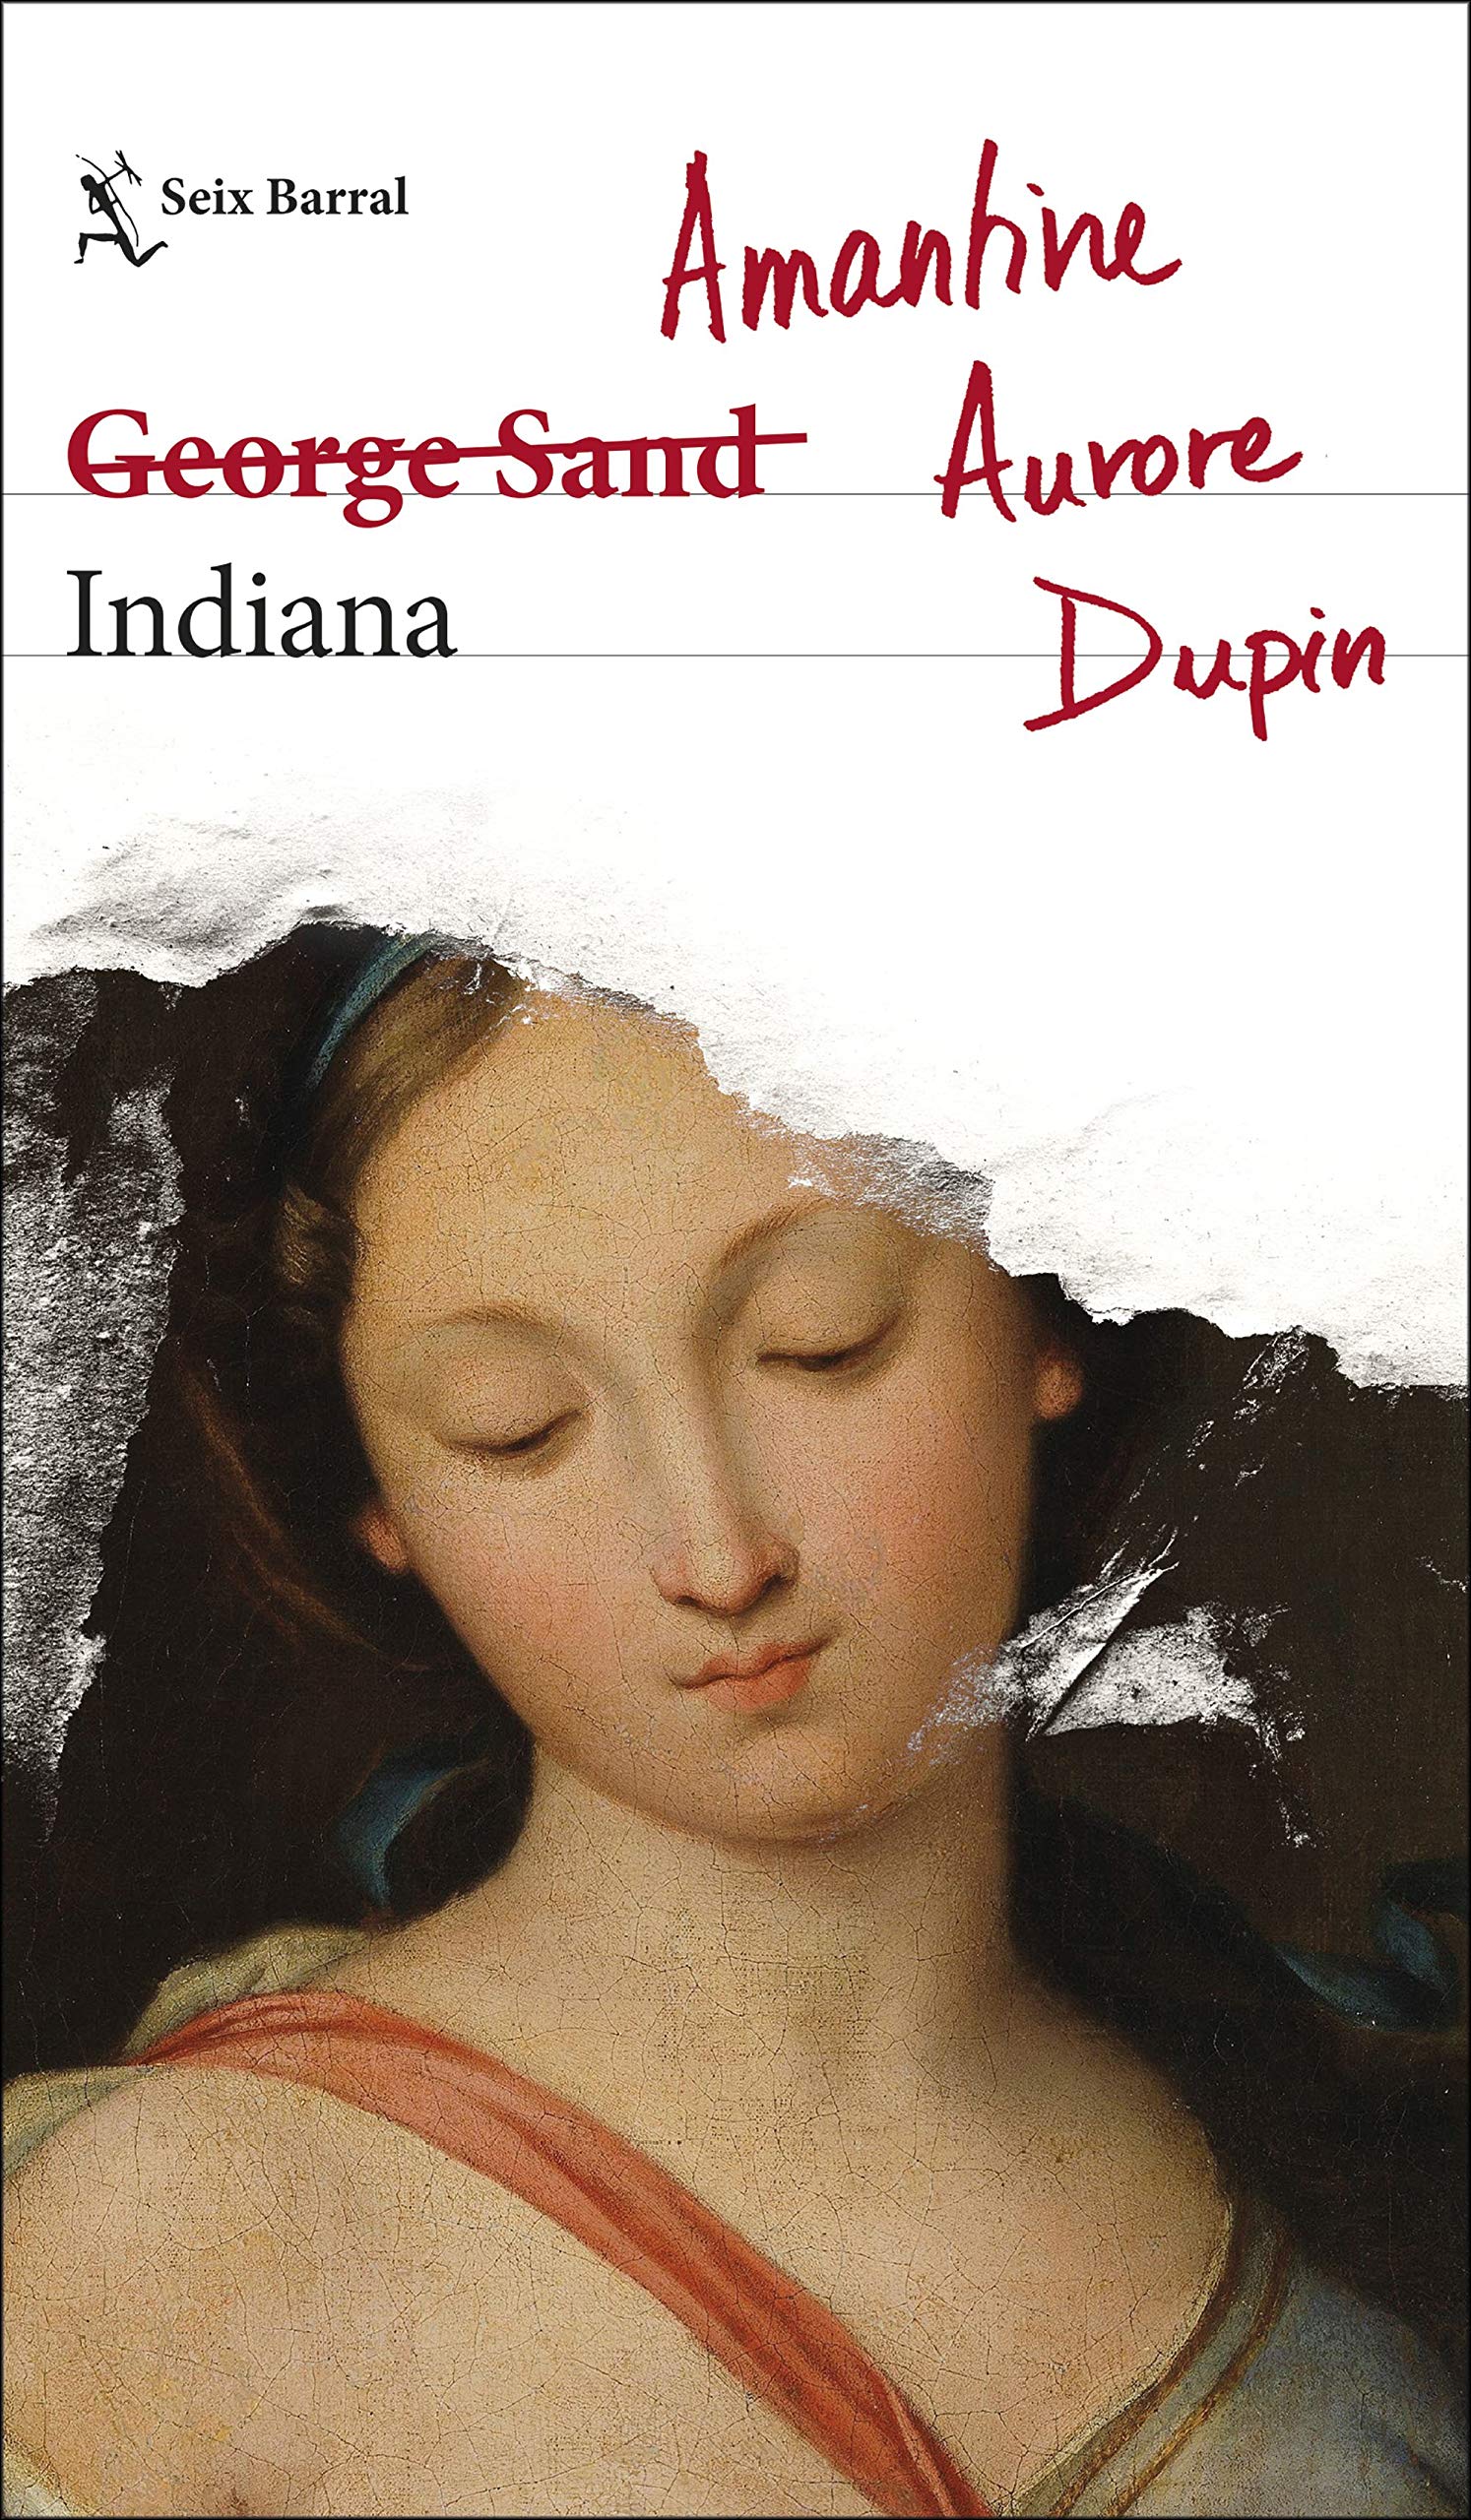 Zenda recomienda: «Indiana», de Amantine Aurore Dupin (George Sand)